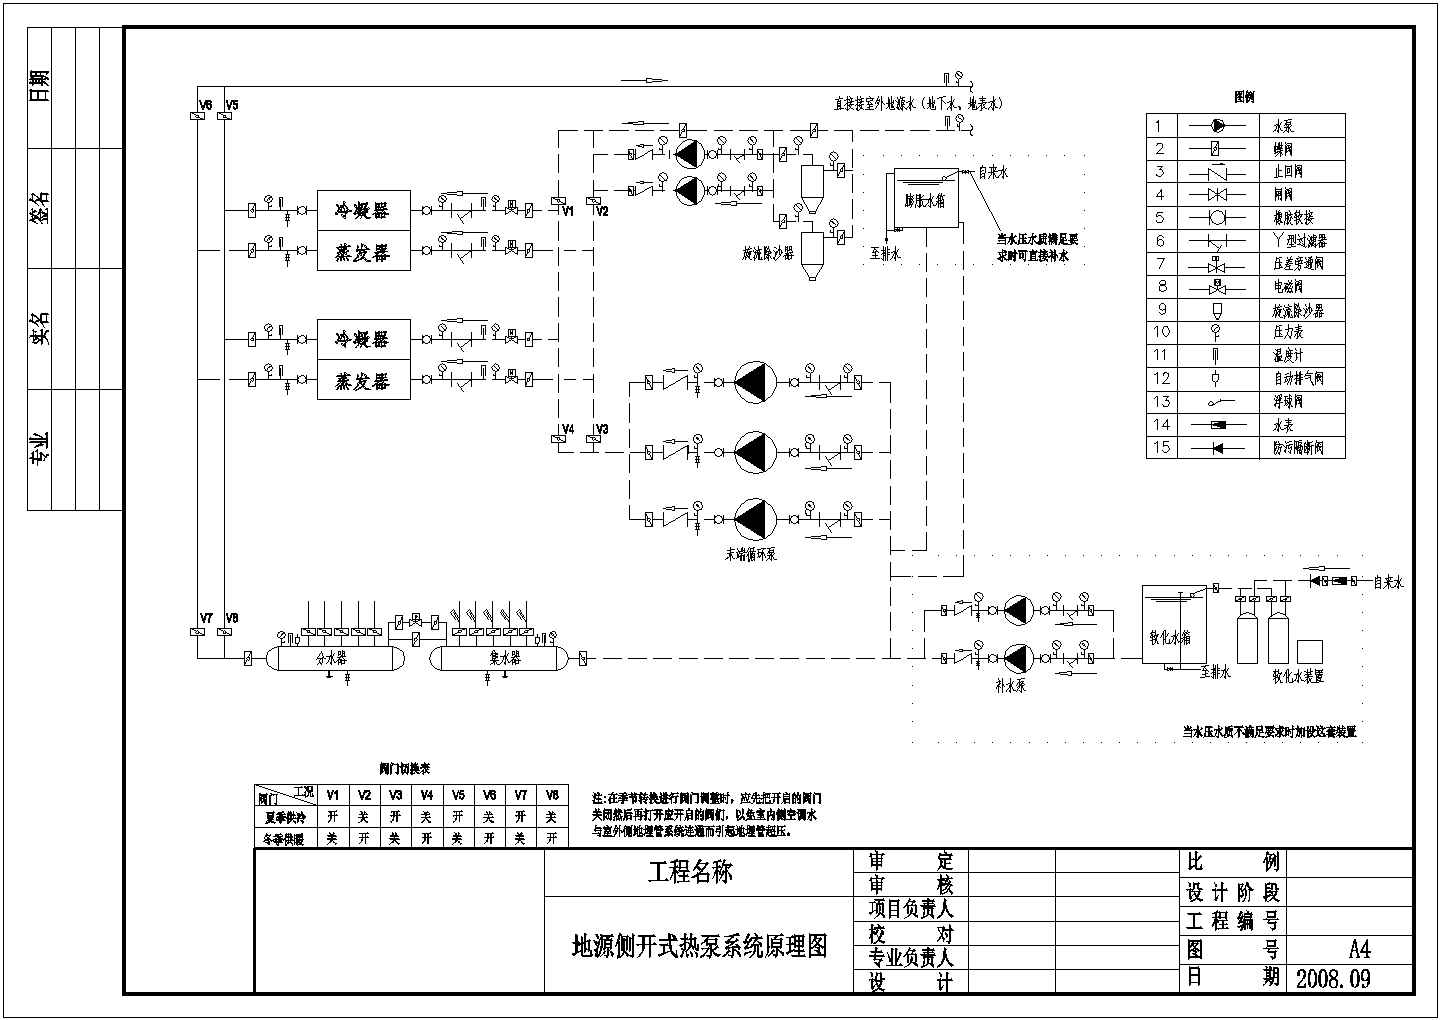 地源热泵系统原理图(开式,间接利用式) 通风空调图纸